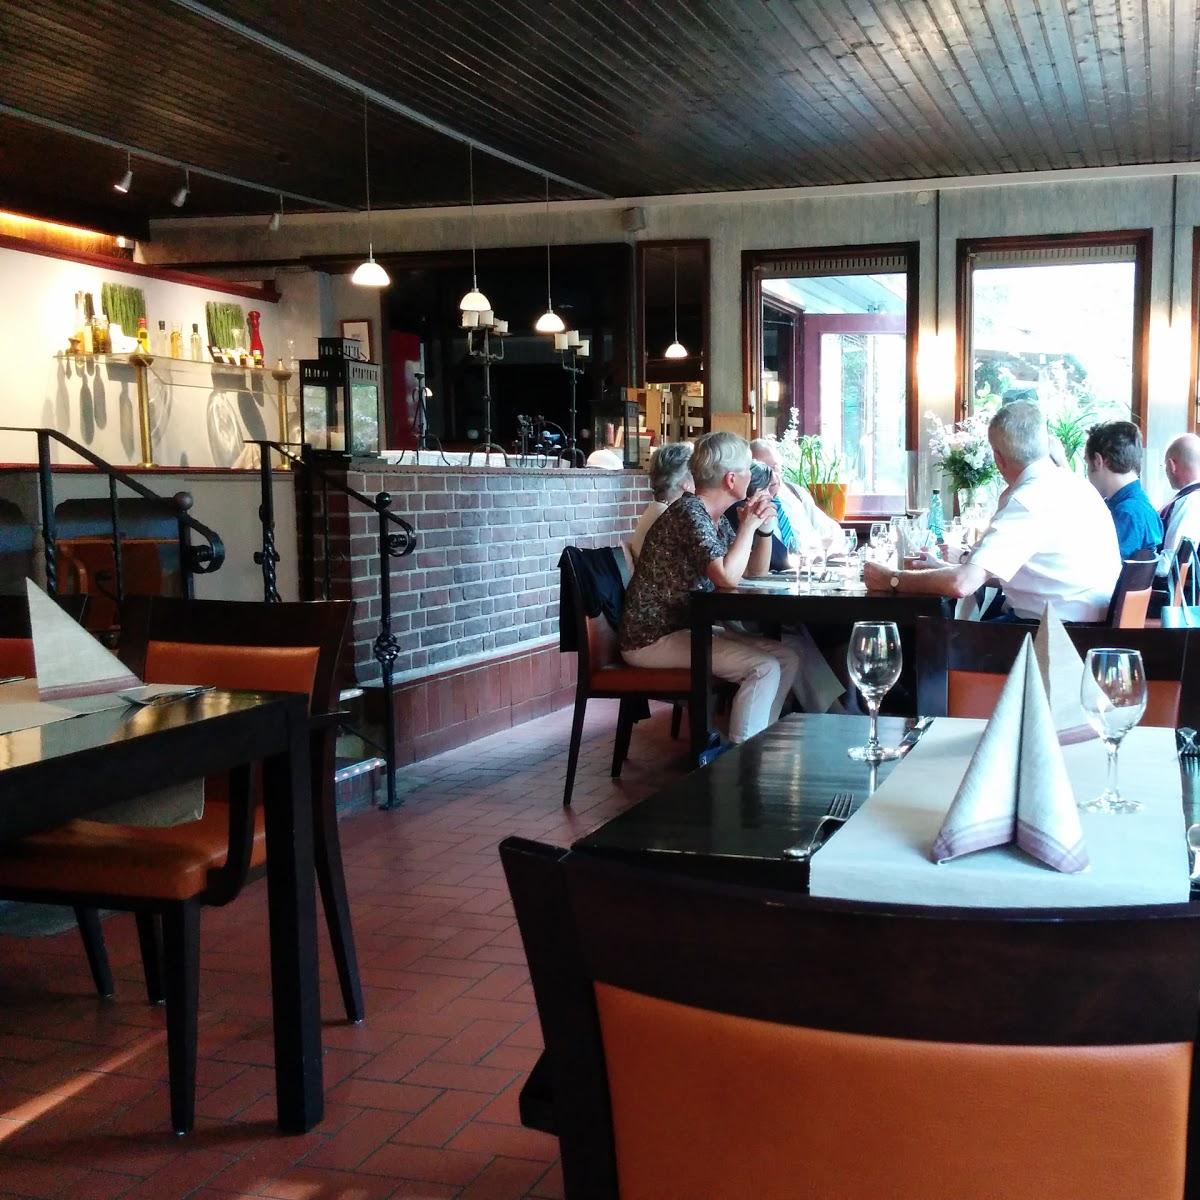 Restaurant "KDW, Restaurant KDW, Karsten Döring´s Waldrestaurant" in Wedel